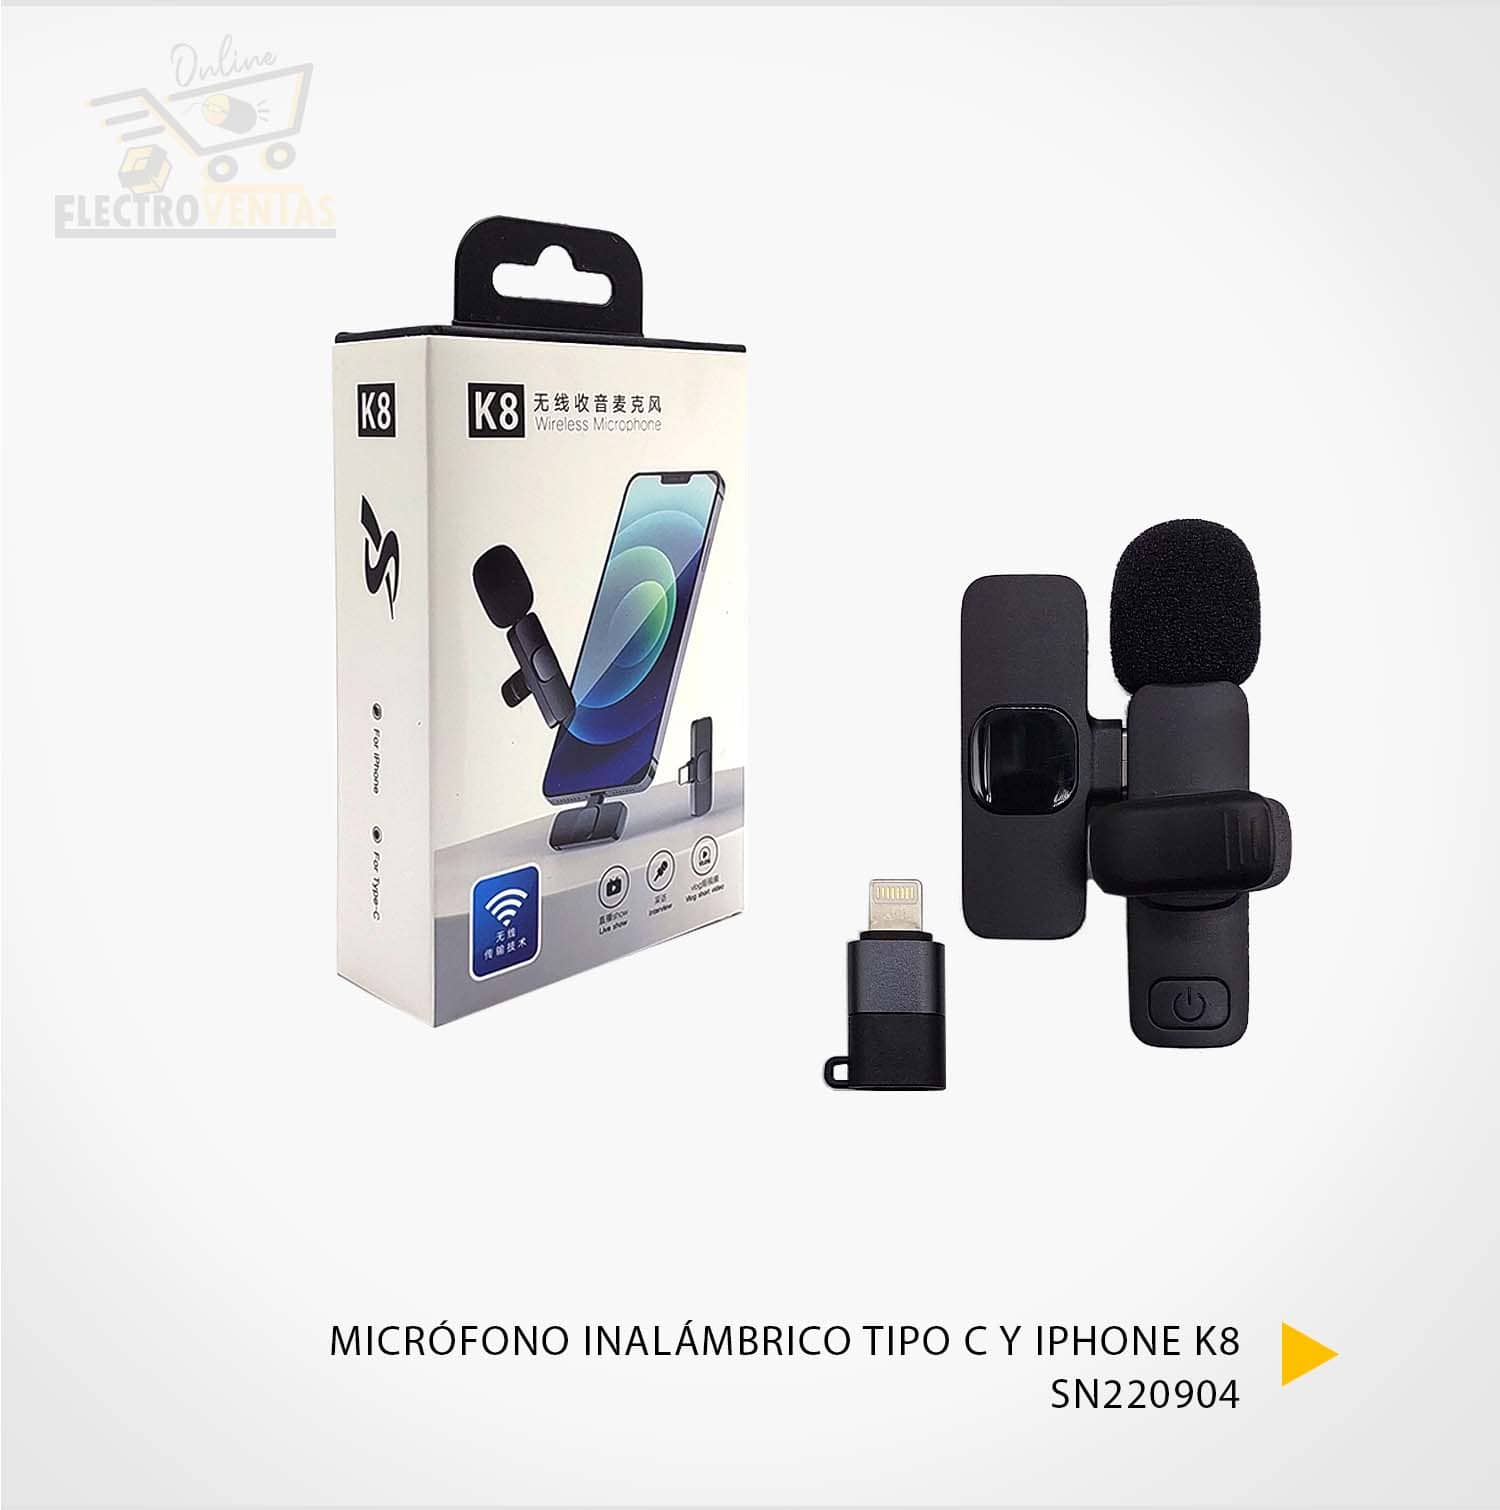 Micrófono inalámbrico para celular DUO – Novex Bolivia